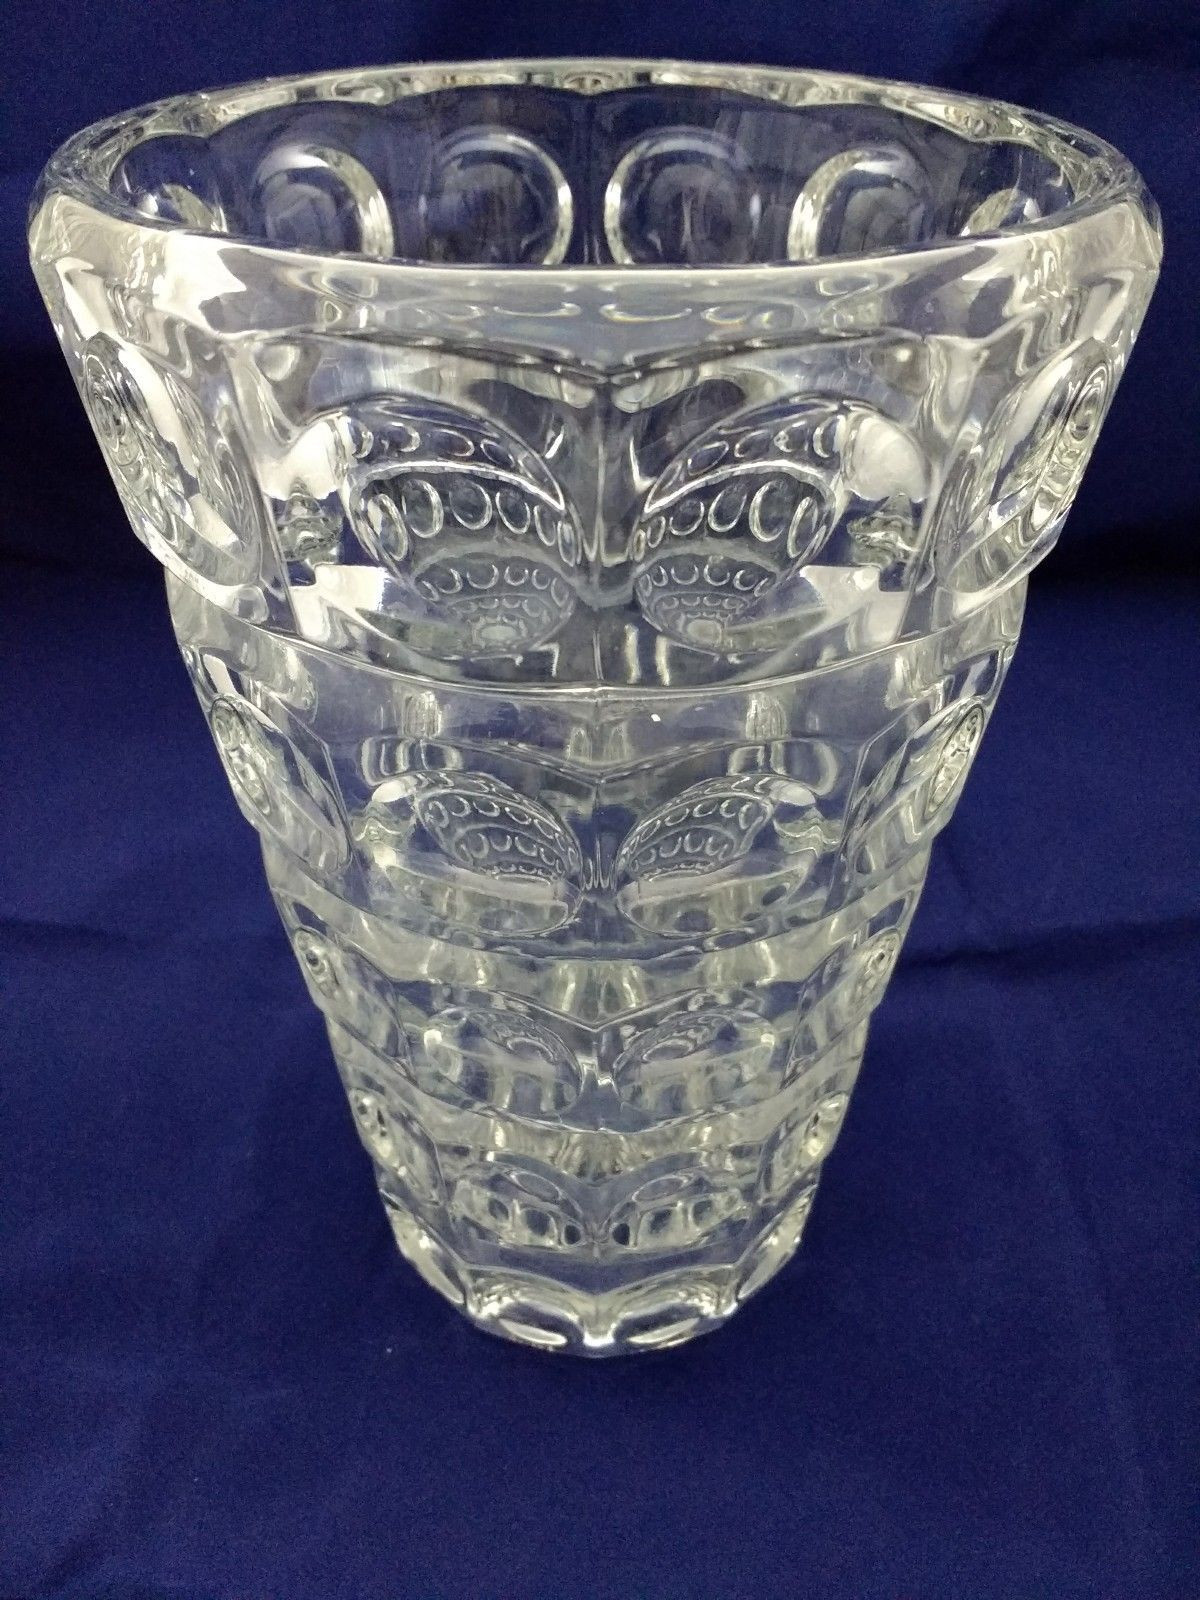 26 attractive Large Glass Goblet Vase 2024 free download large glass goblet vase of sklo union rosice lense vase czech glass pinterest regarding sklo union rosice lense vase ebay